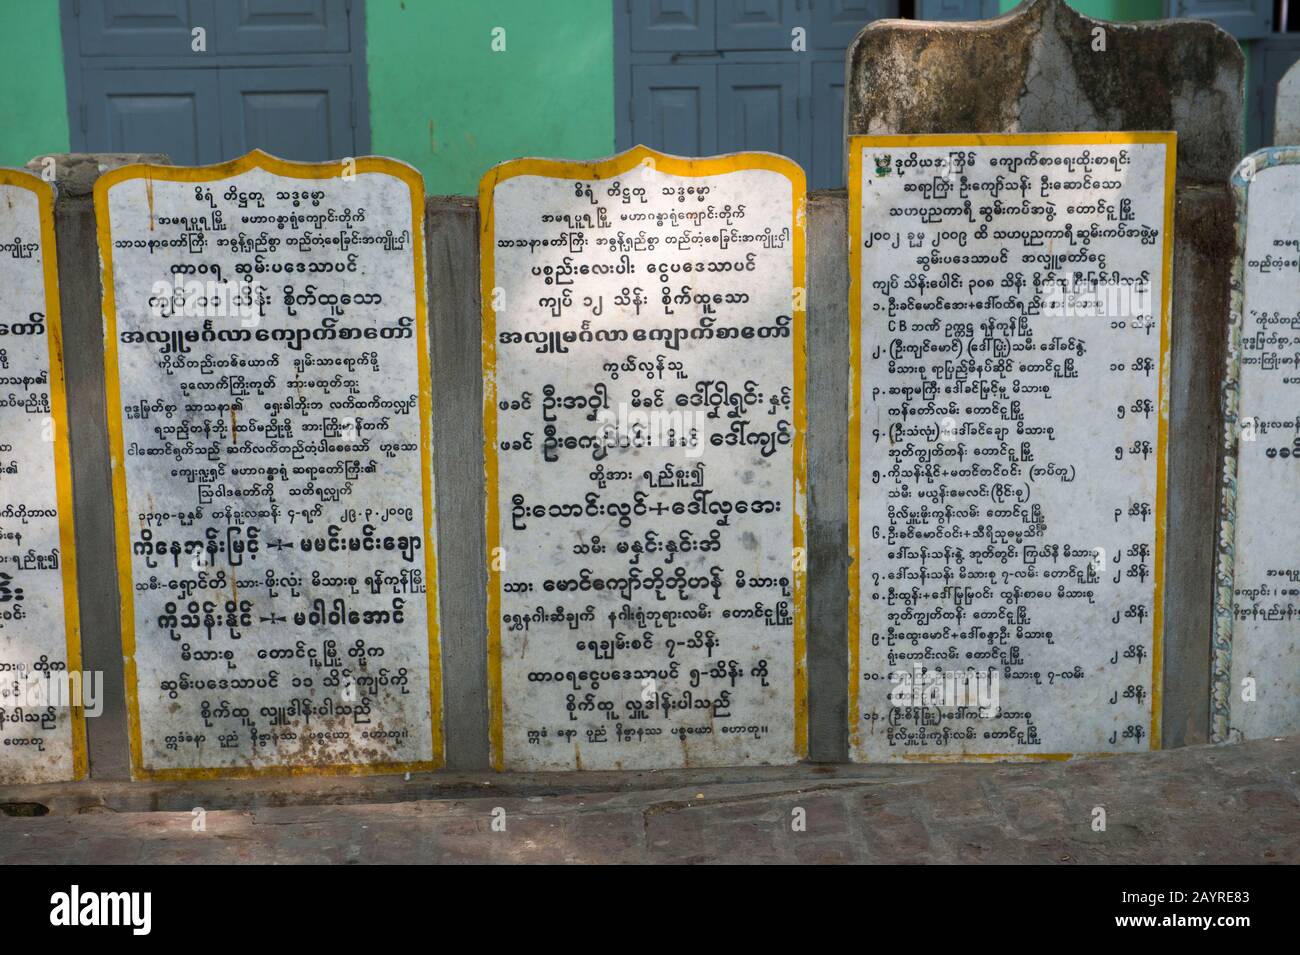 Tavolette di pietra con i nomi dei donatori e donazioni al monastero di Mahagandayon a Mandalay, Myanmar. Foto Stock